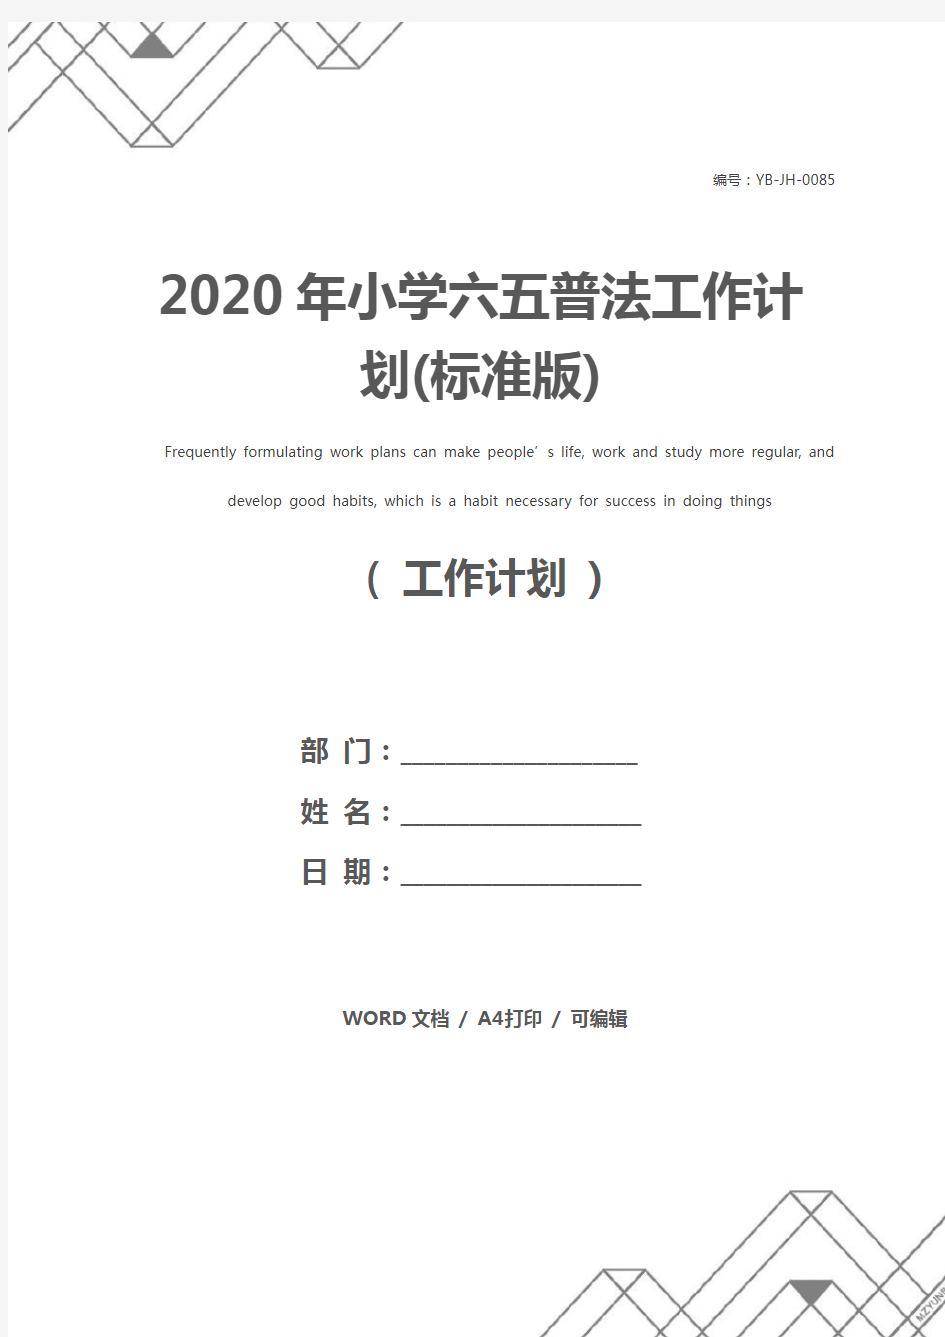 2020年小学六五普法工作计划(标准版)